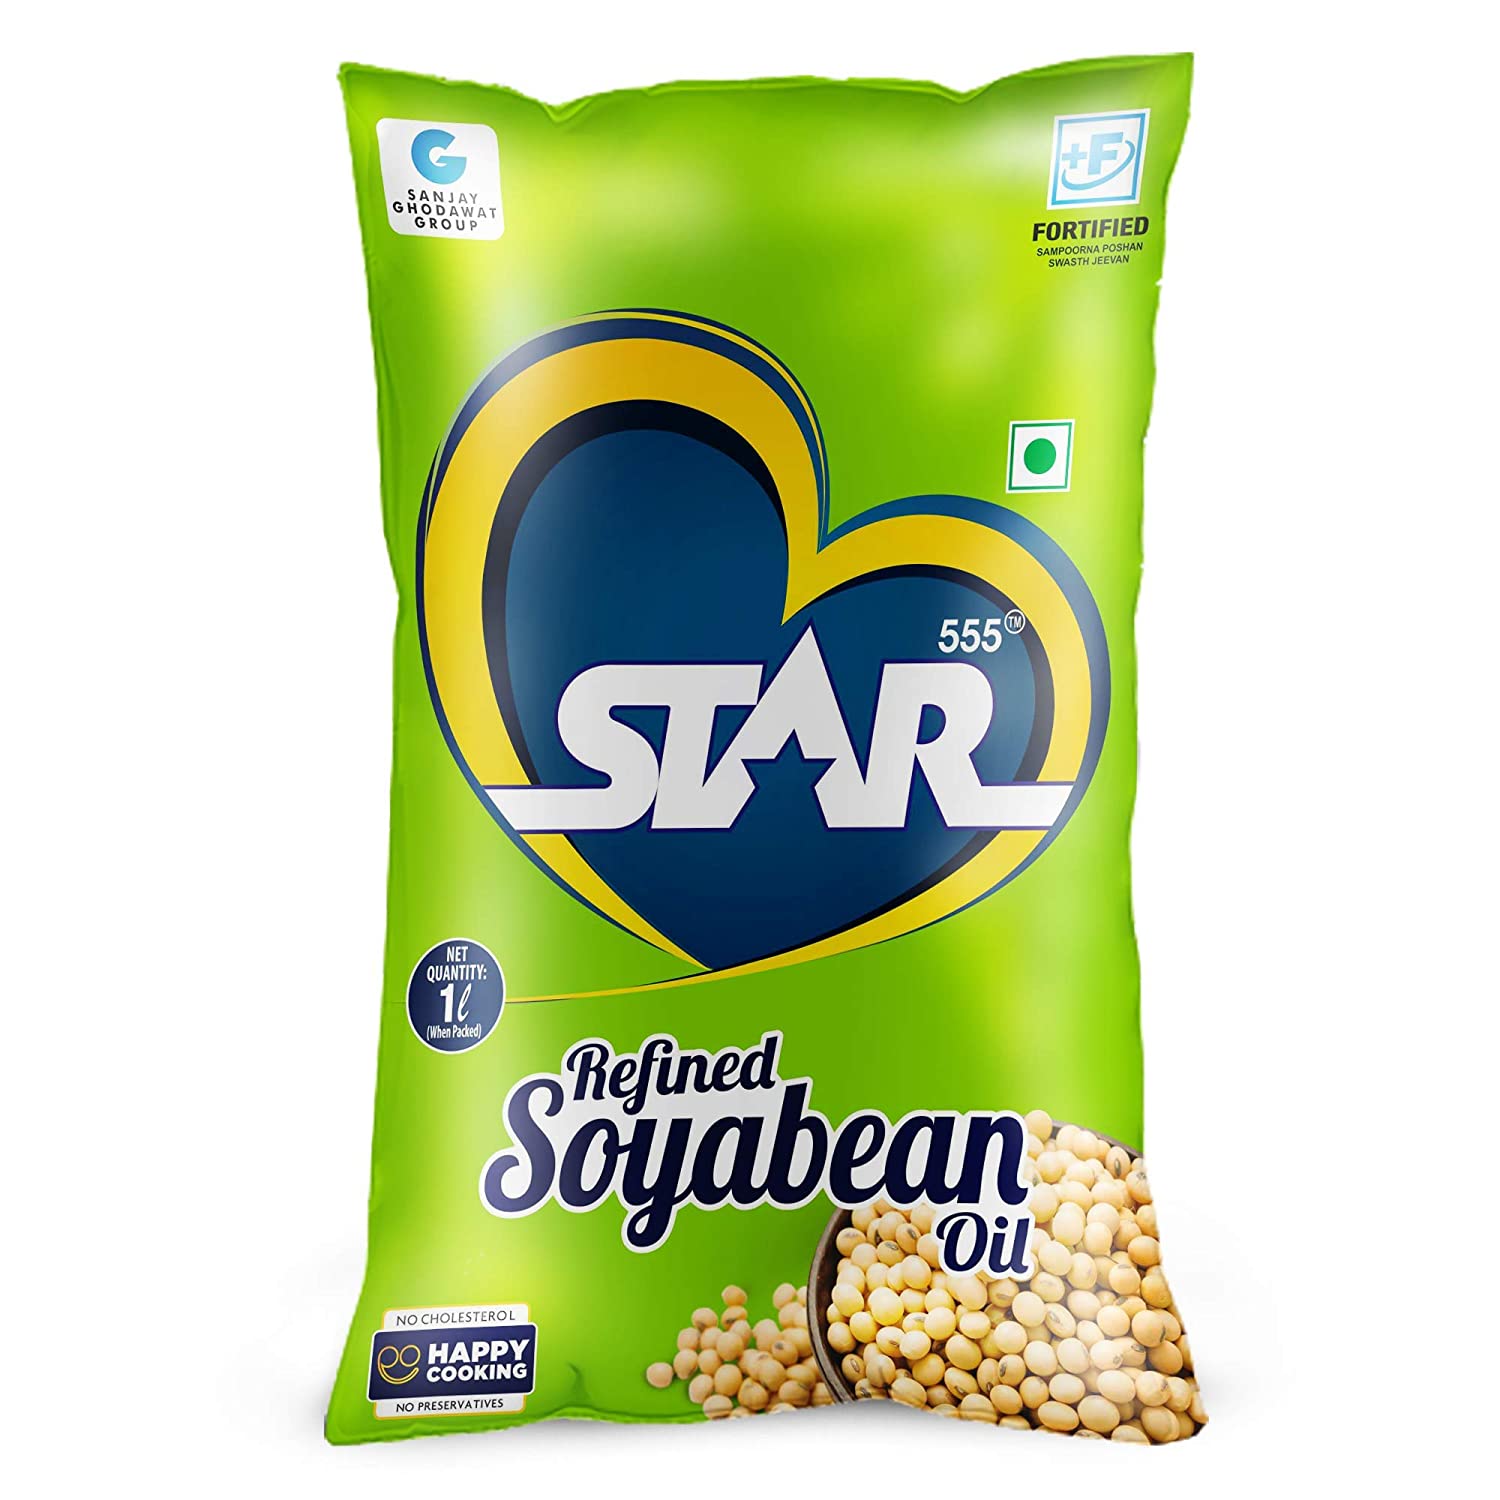 STAR 555® Refined Soyabean Oil, 1 Ltr